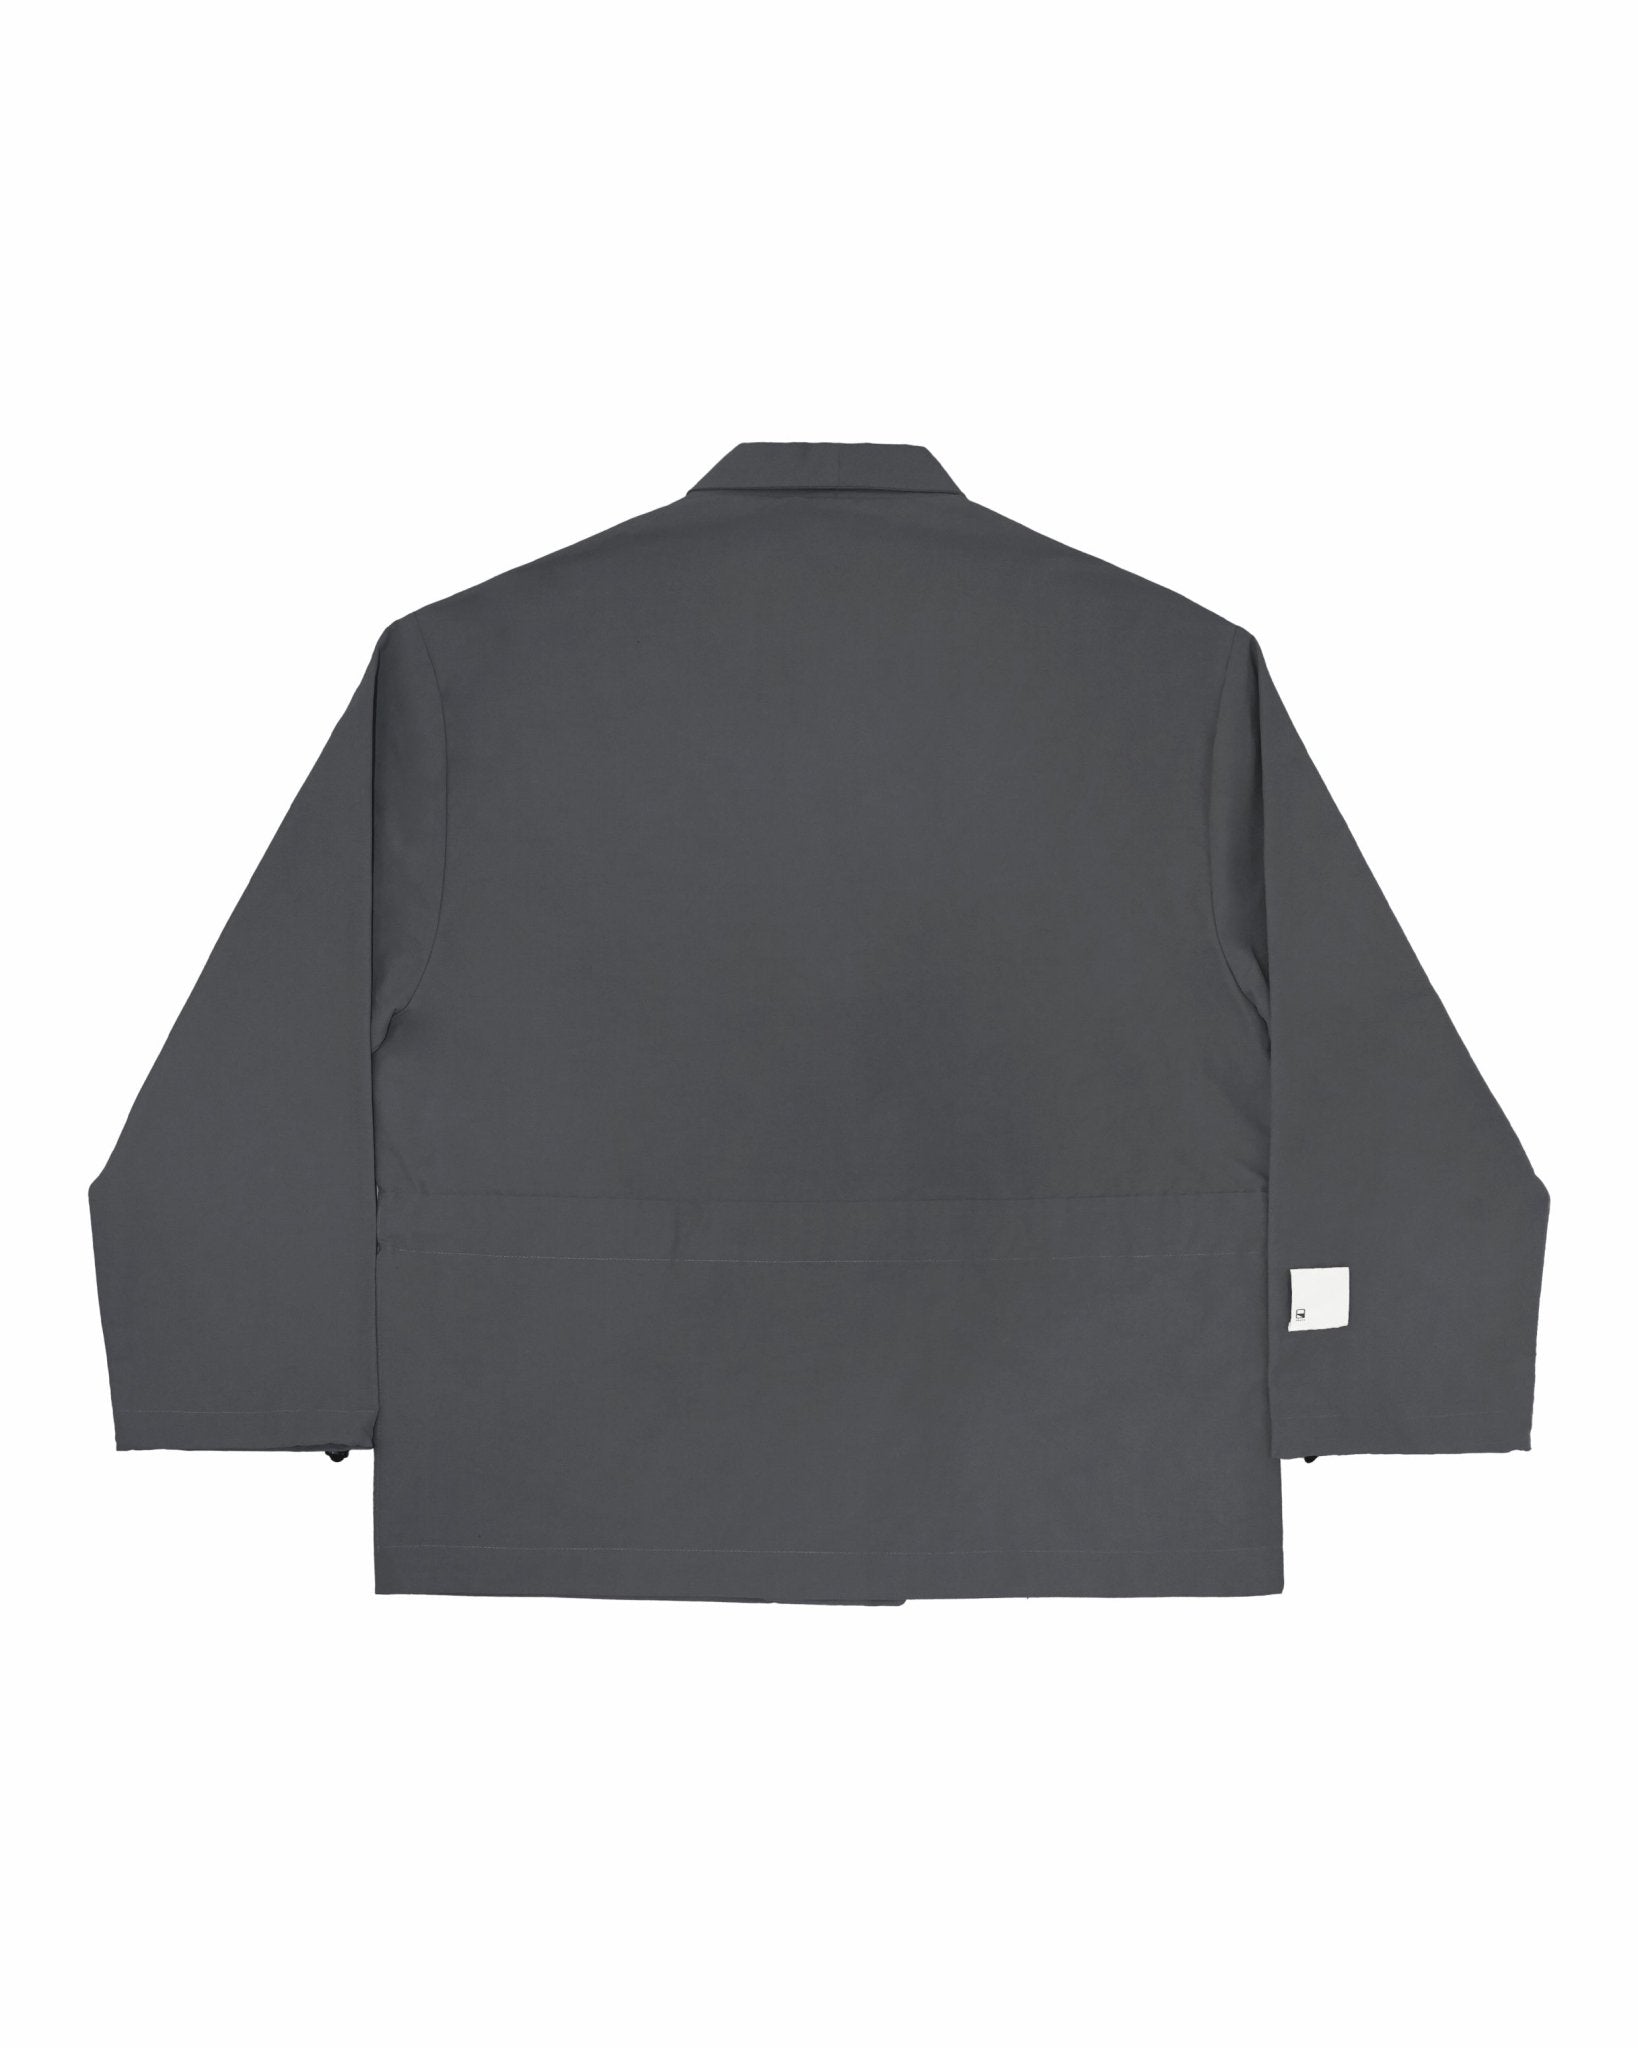 Kimono Buckle Jacket - Graphite – G R A Y E